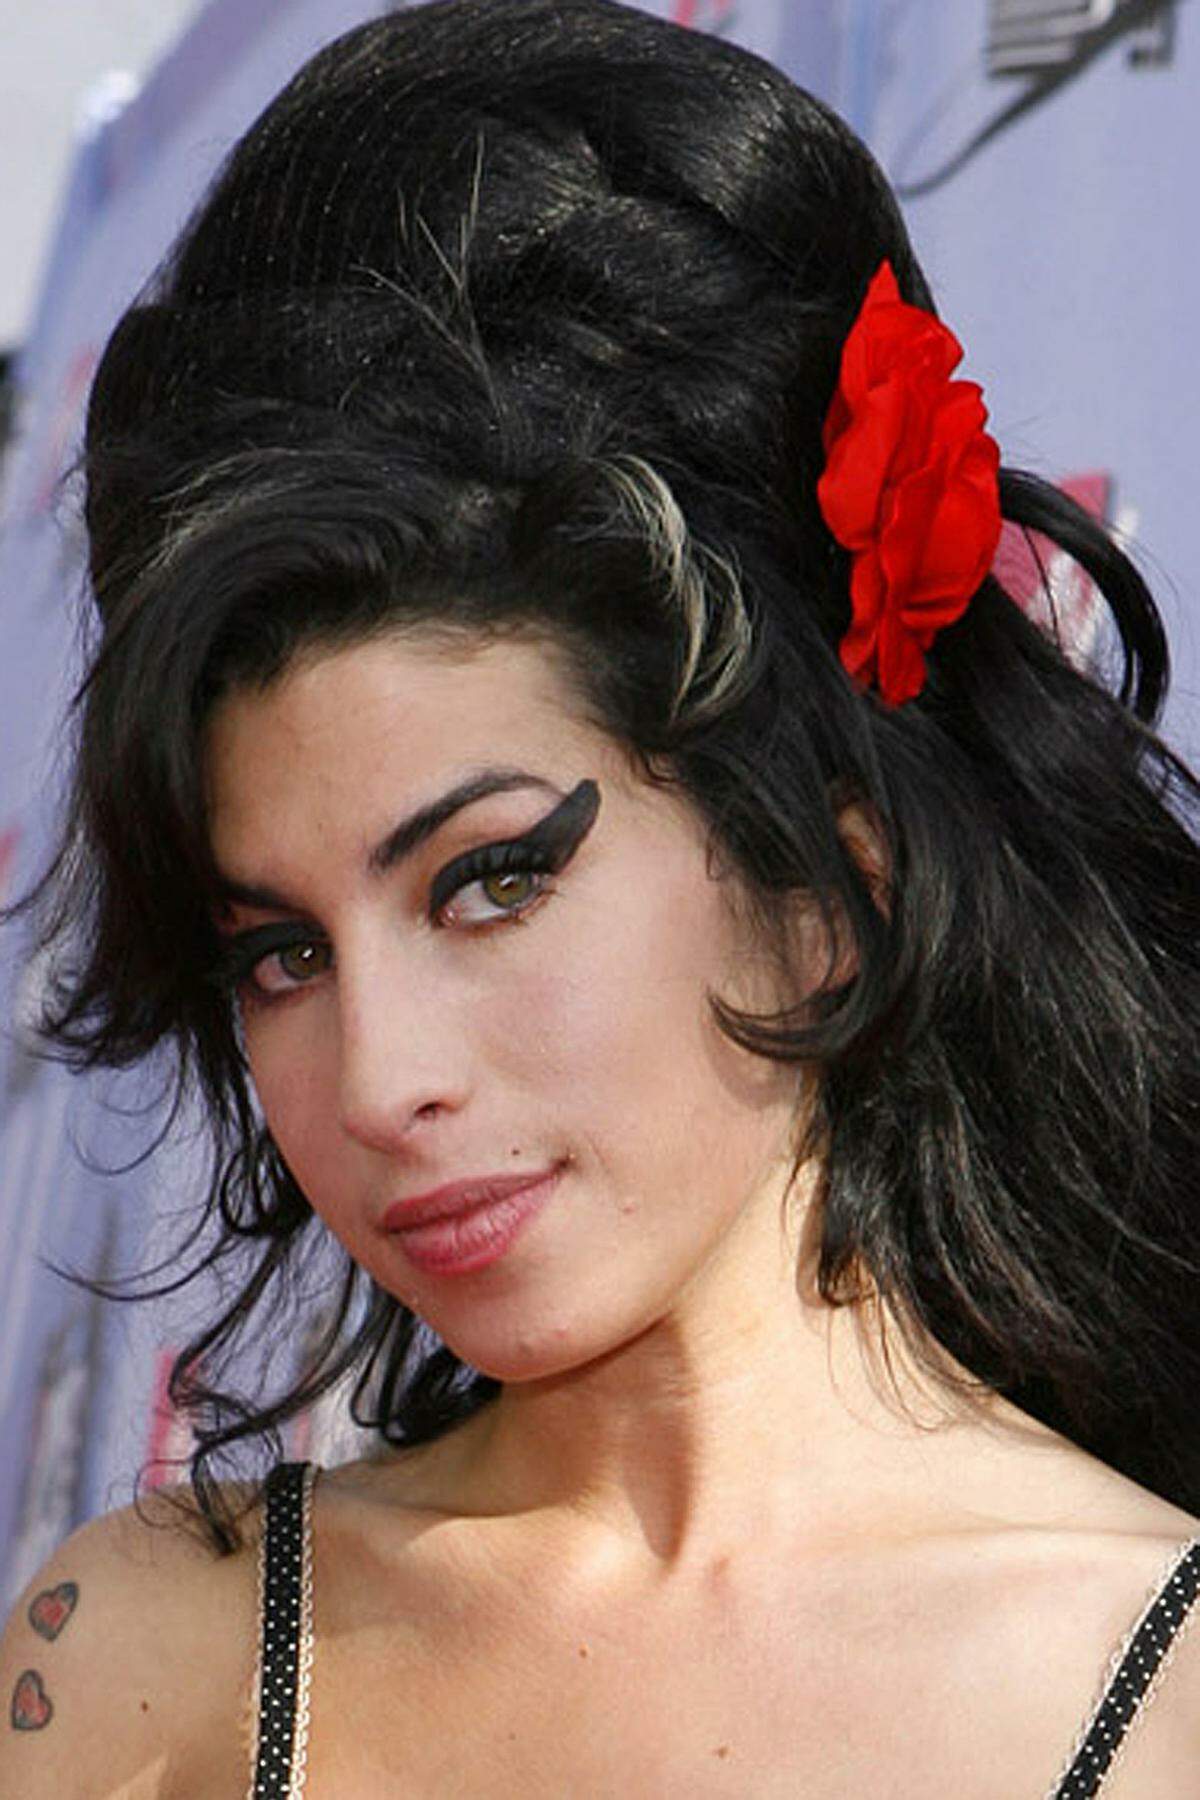 Auffallend viele hochtalentierte Musiker starben in den vergangenen Jahrzehnten im Alter von 27 Jahren und wurden nicht zuletzt dadurch zum Mythos. Der sogenannte Club 27 oder das pietätlose Forever 27 wurden zu Schlagwörtern. Am 23. Juli starb tragischerweise auch die britische Soulsängerin Amy Winehouse 27-jährig.Ein Chronologie, von Robert Johnson bis Amy Winehouse.